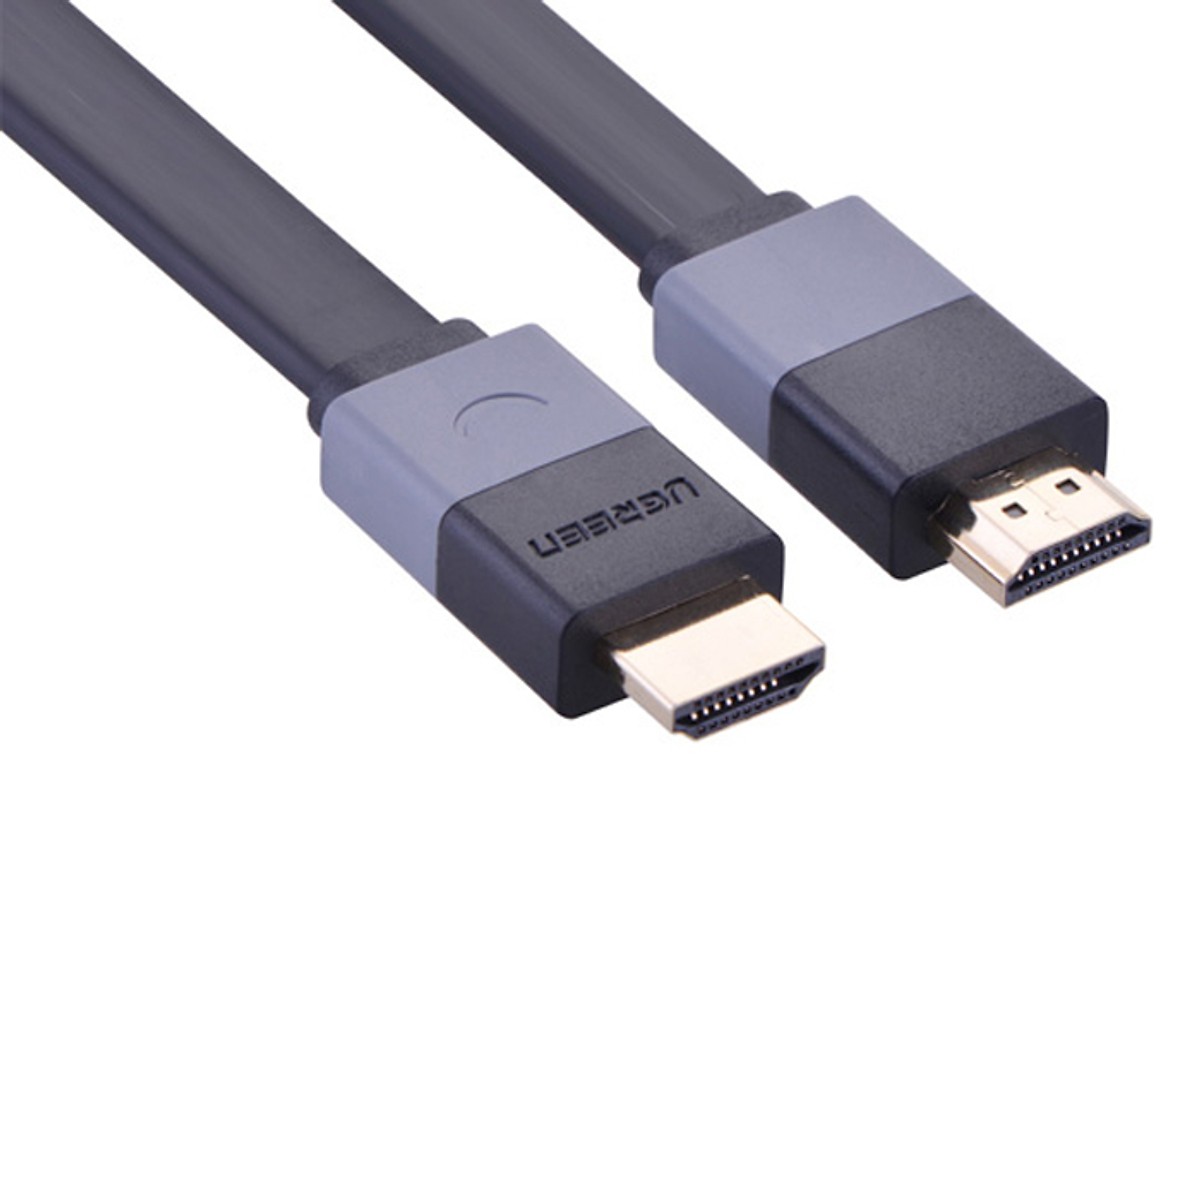 Cáp HDMI 1,5m dây dẹt